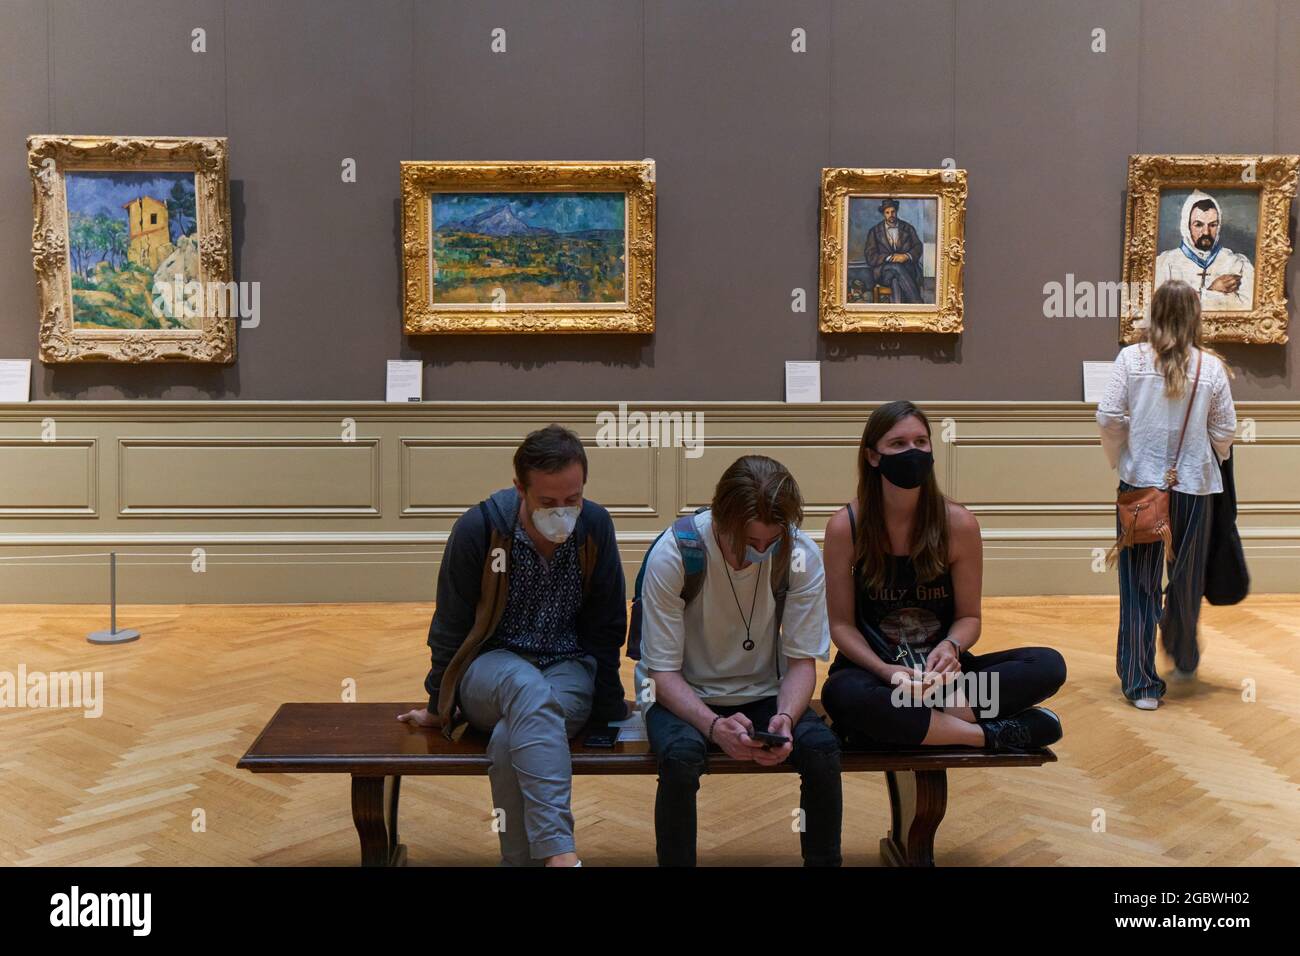 Personnes assises au Metropolitan Museum of Art avec des peintures de Paul Cezanne Banque D'Images